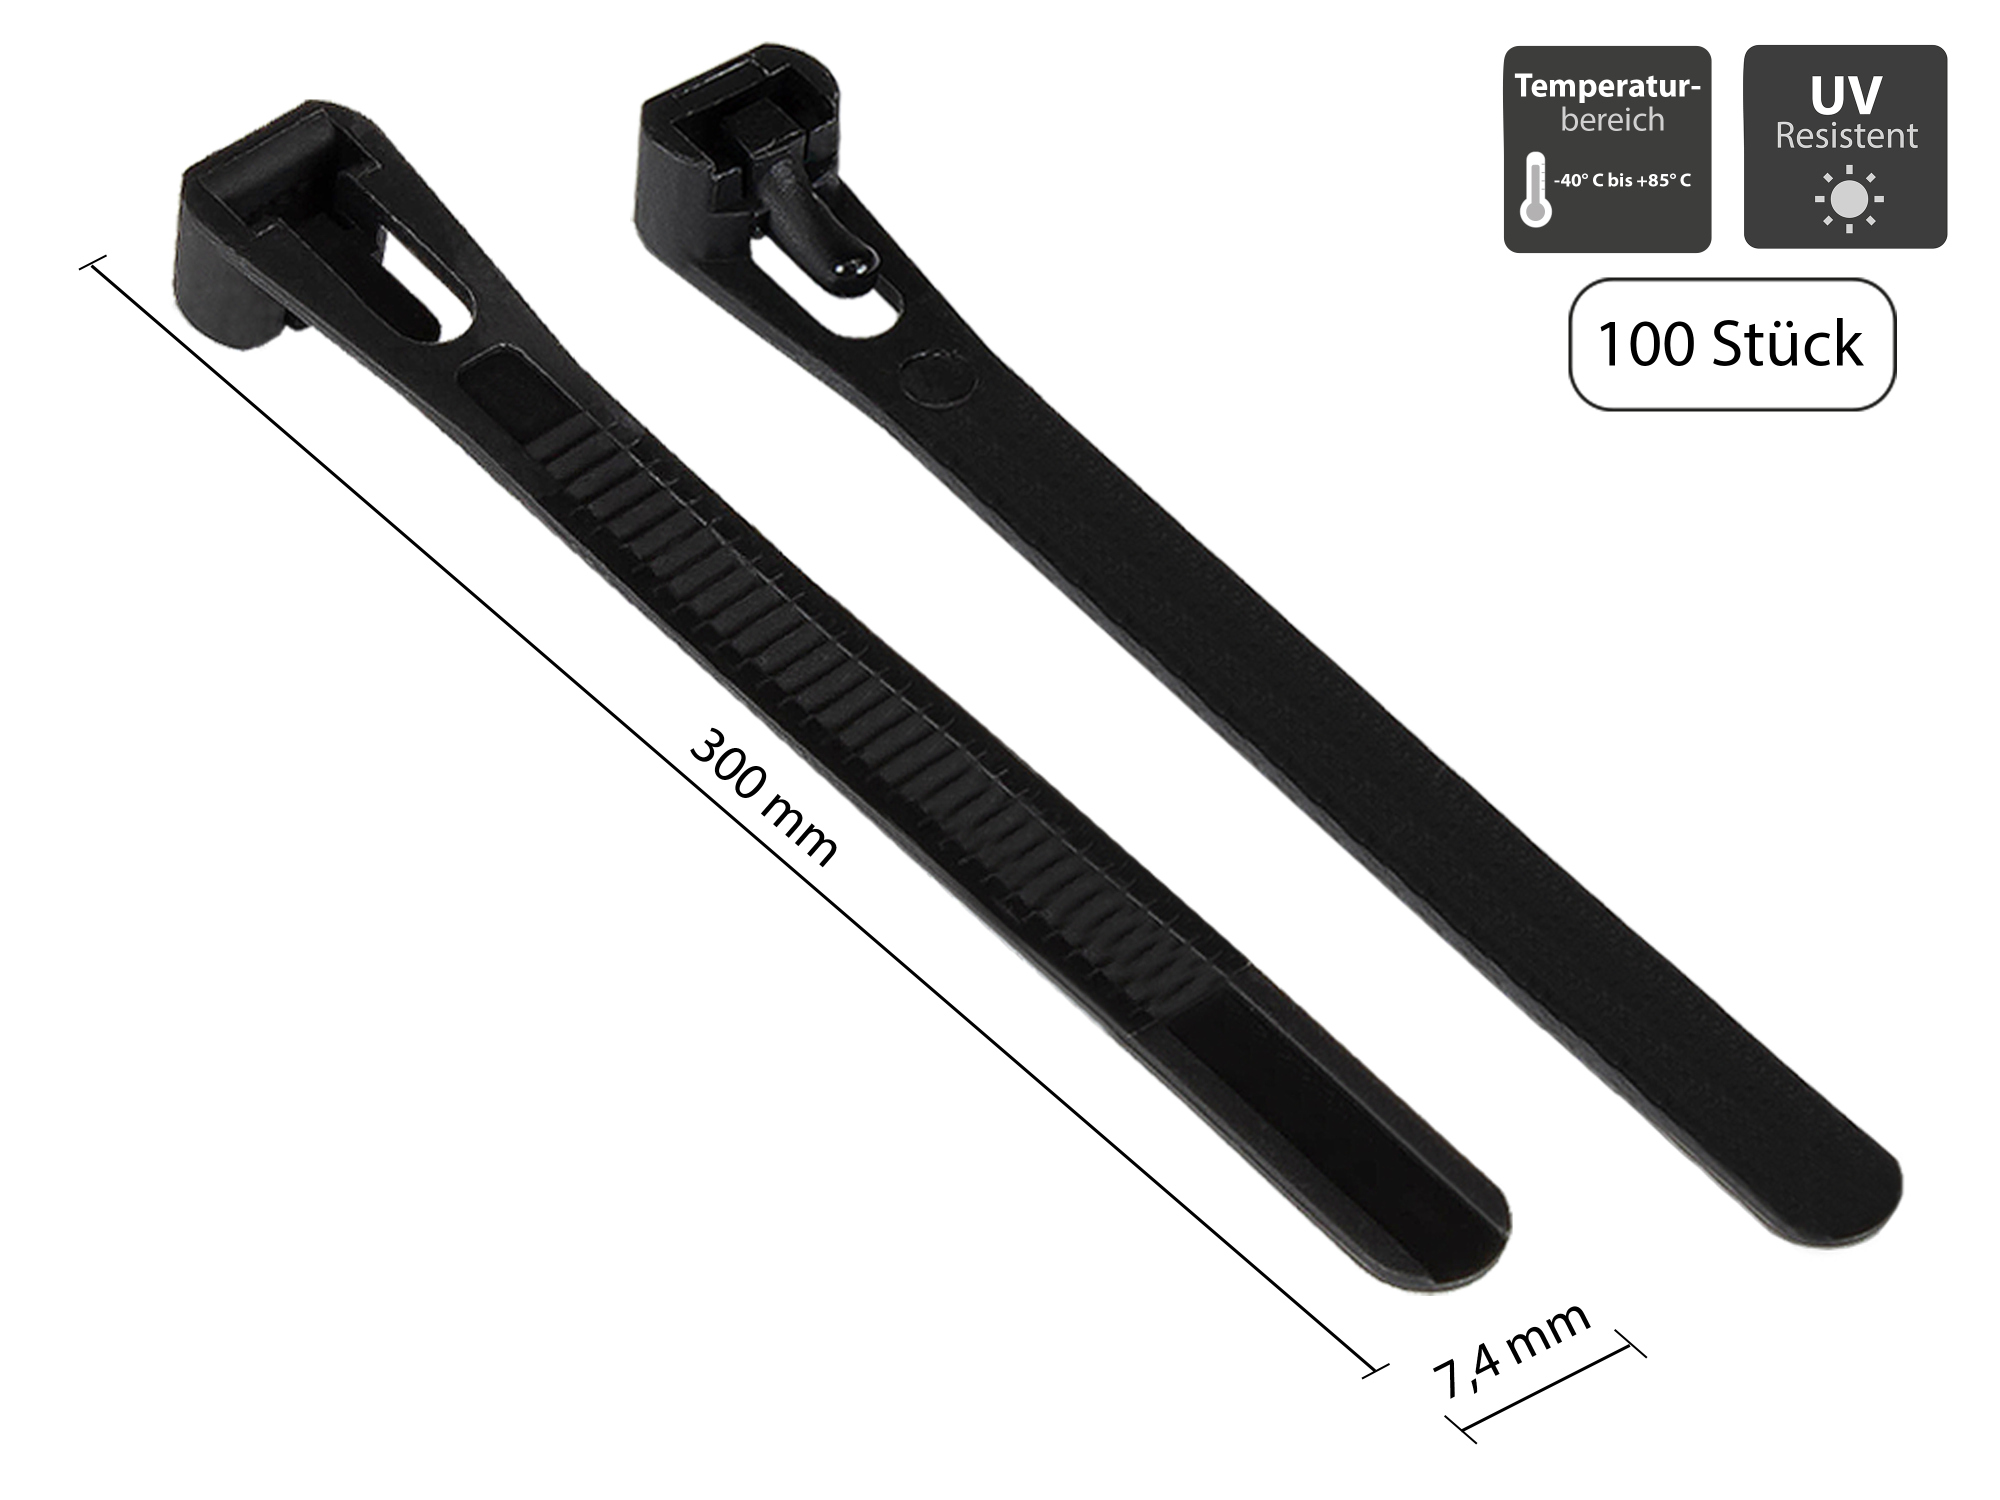 Wiederverwendbarer Kabelbinder 300 mm x 7,4 mm, schwarz, UV-resistent, -40 °C bis +85 °C, 100 Stück